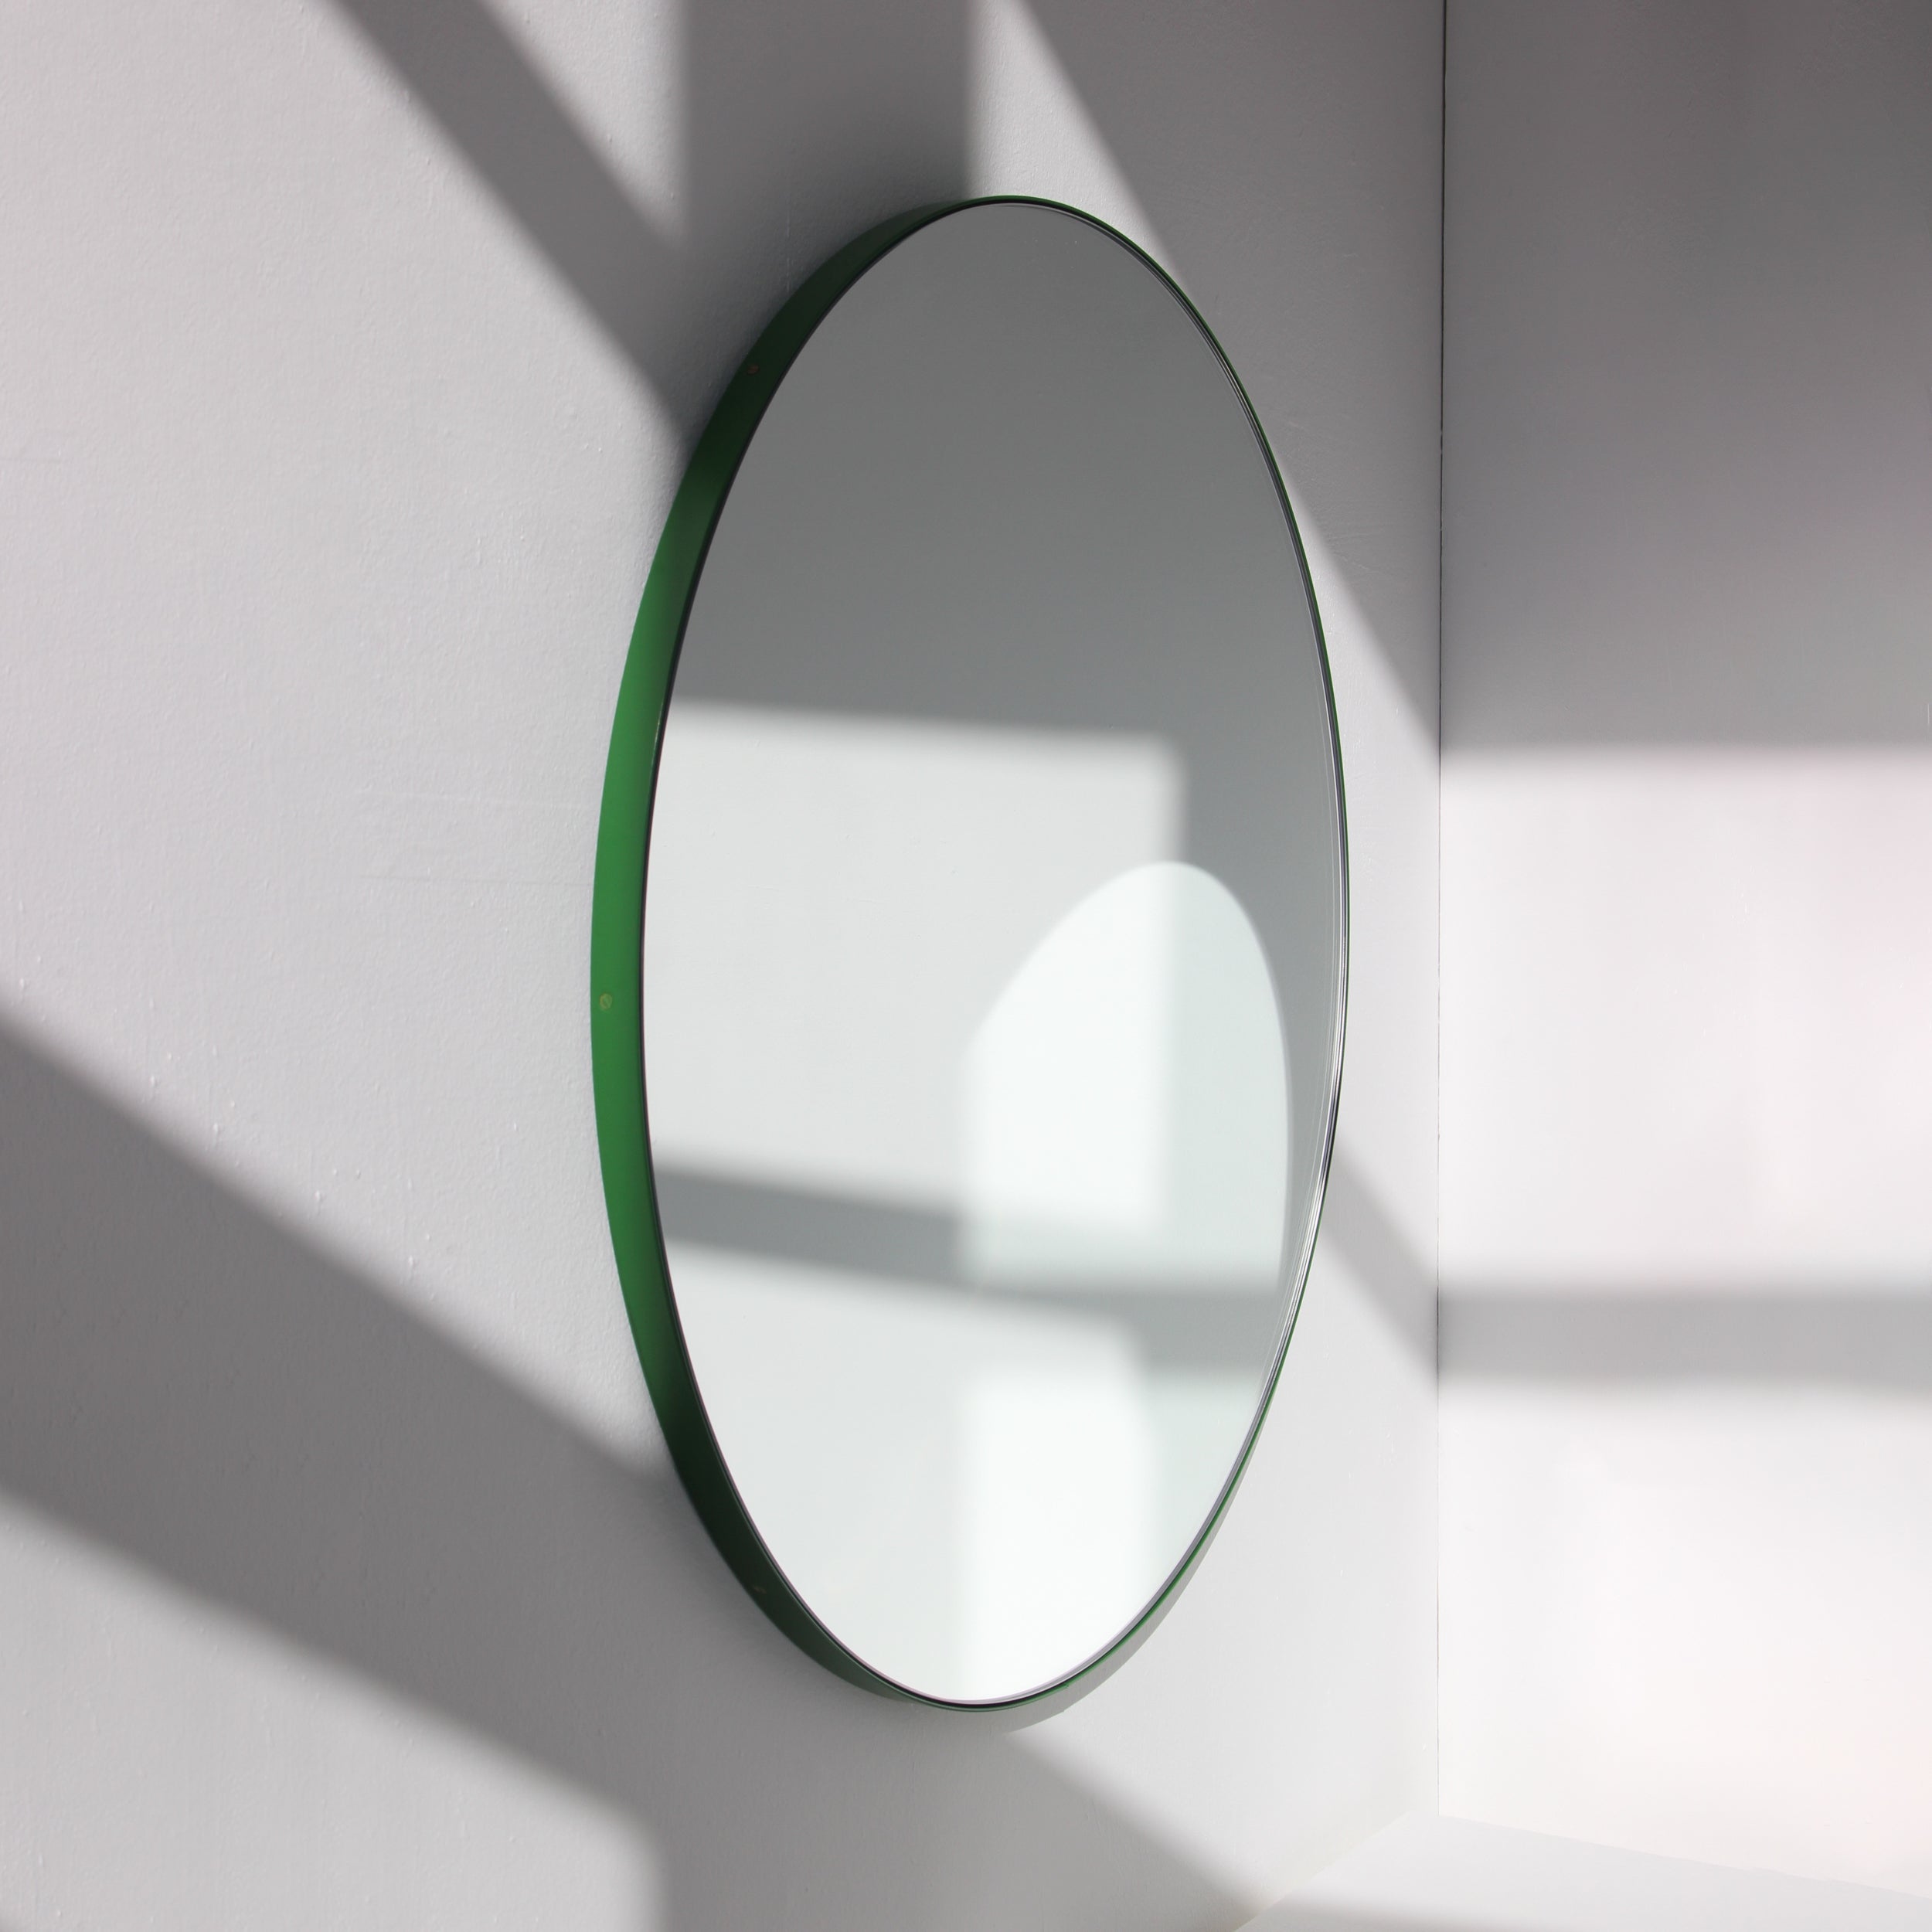 Orbis Runder Minimalistischer Spiegel mit grünem Rahmen, klein